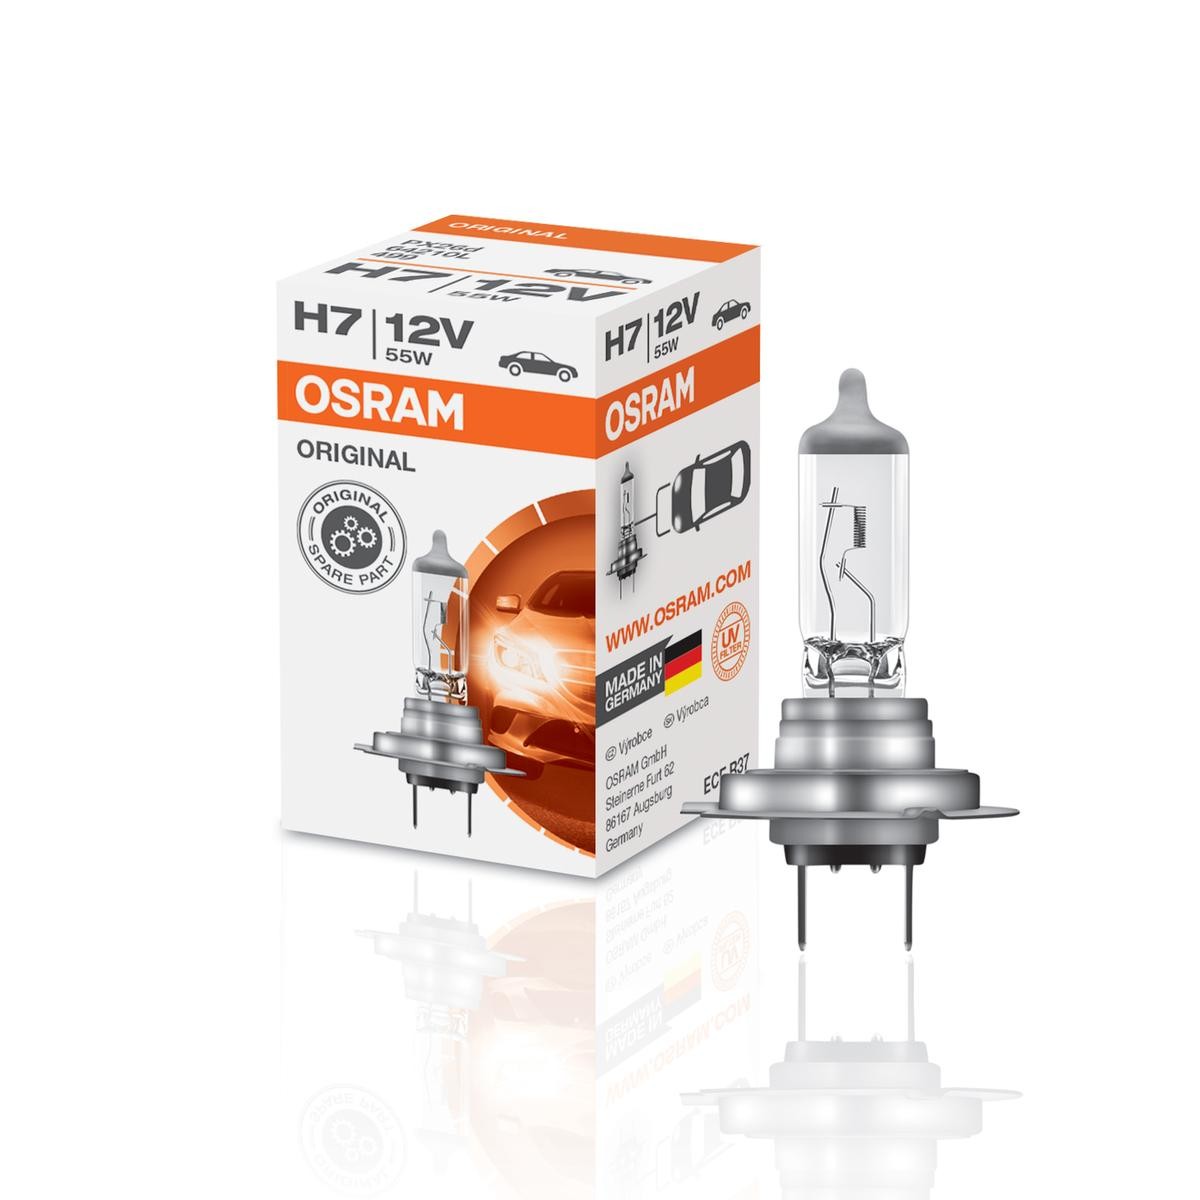 OSRAM Spotlight bulb Passat B6 Variant new 64210